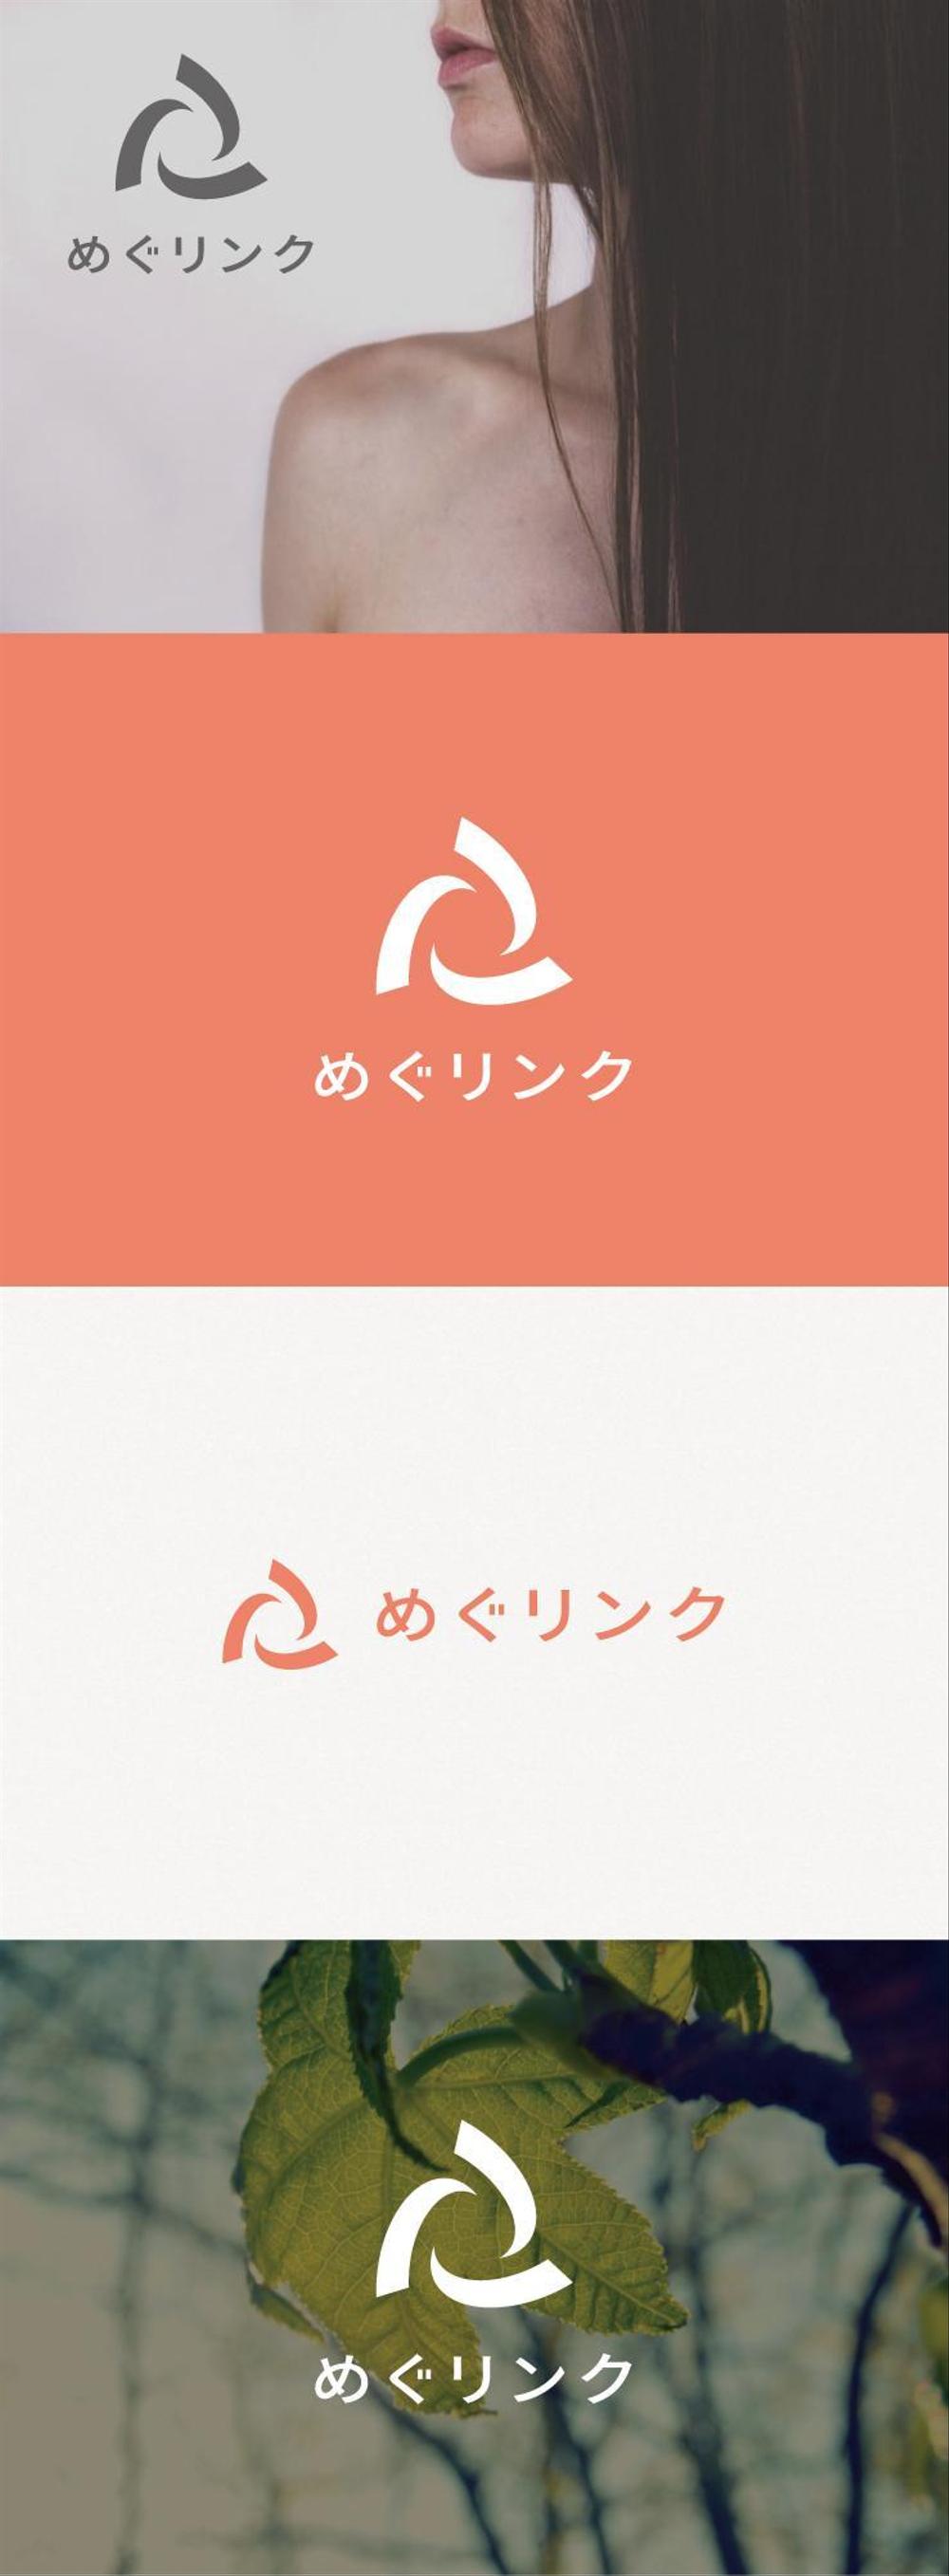 サロン販売サプリメント「めぐリンク」のロゴ